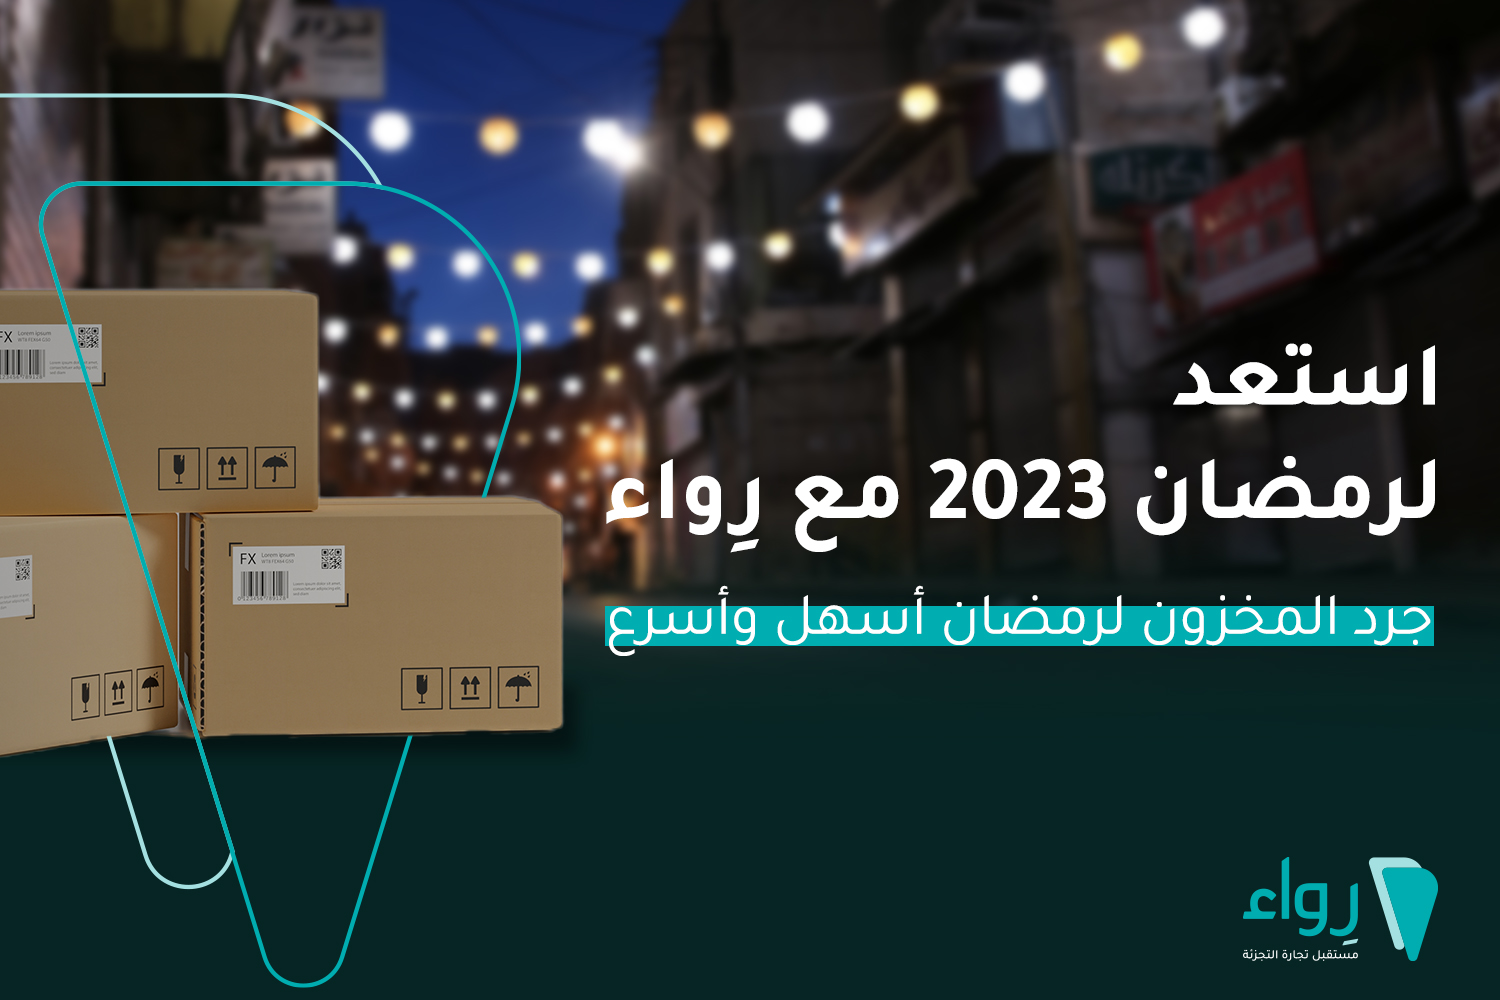 جرد المخزون ادارة المخزون رمضان 2023 مبيعات